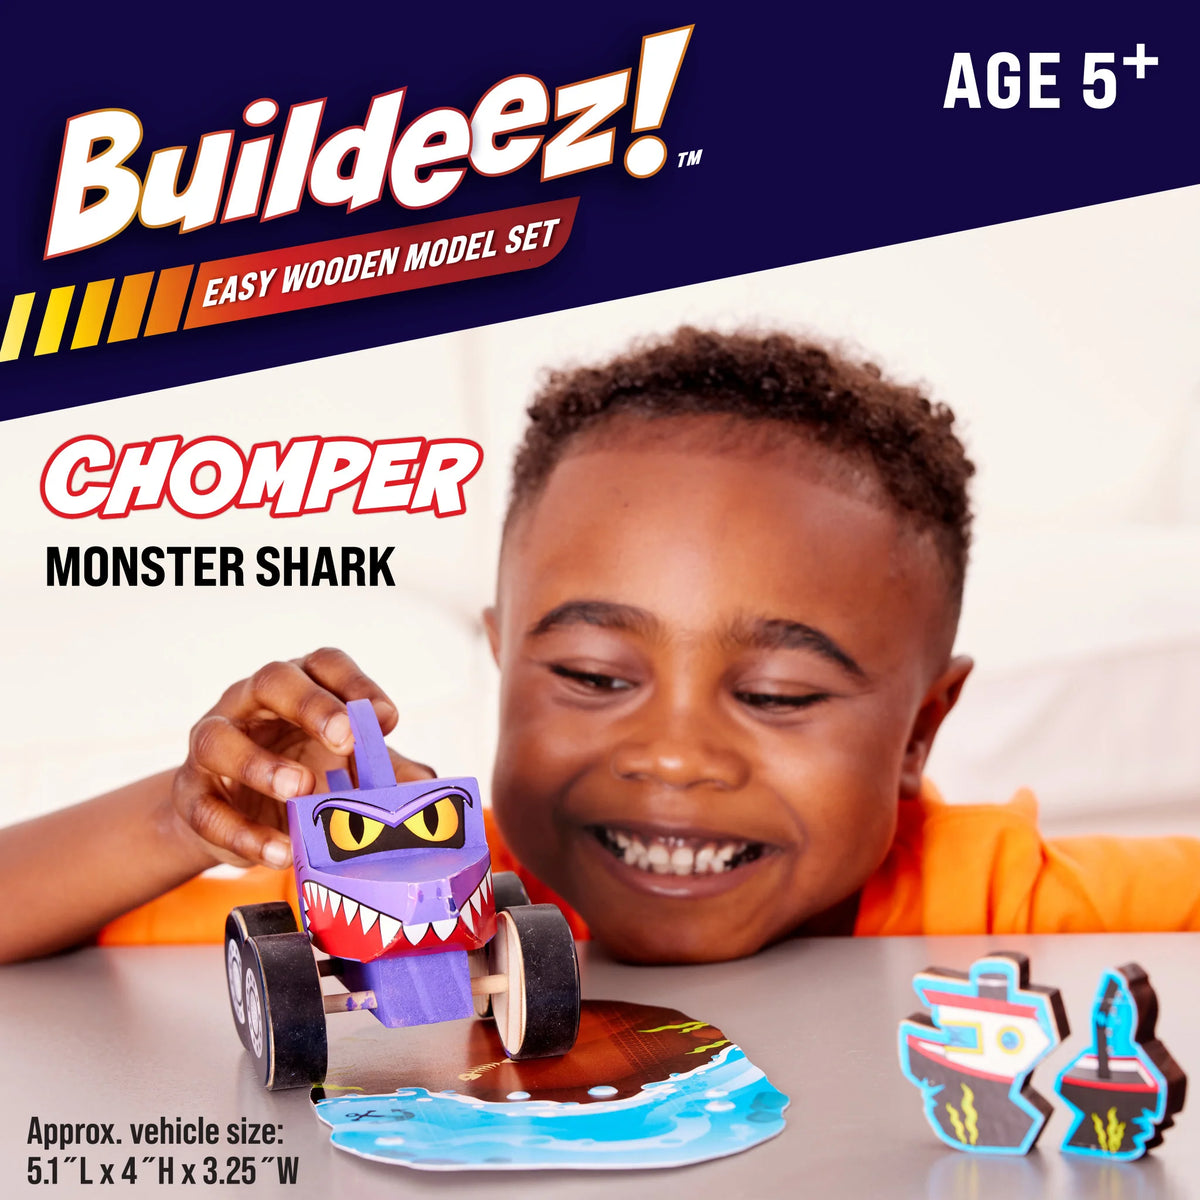 Buildeez! Monster Shark Chomper Cover